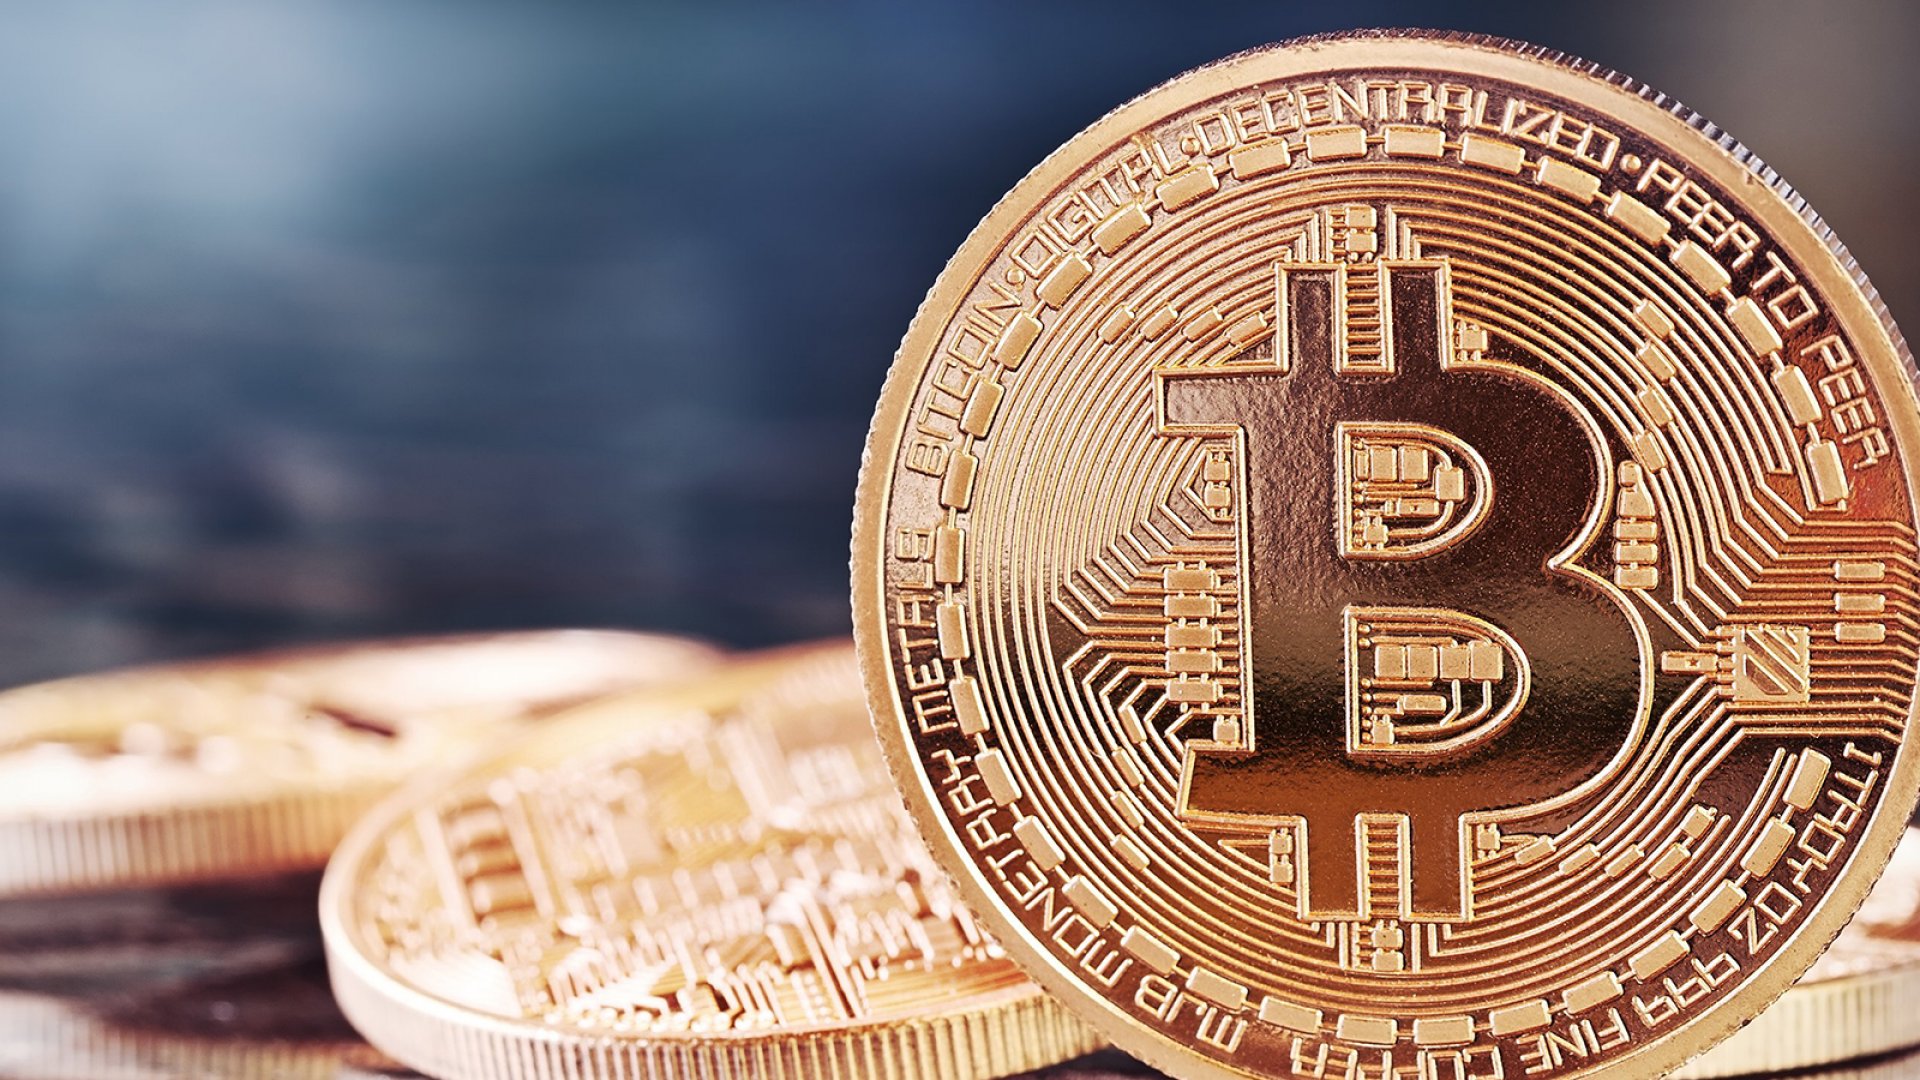 Điểm khác biệt chính giữa coin và token là coin chính là tài sản gốc của blockchain